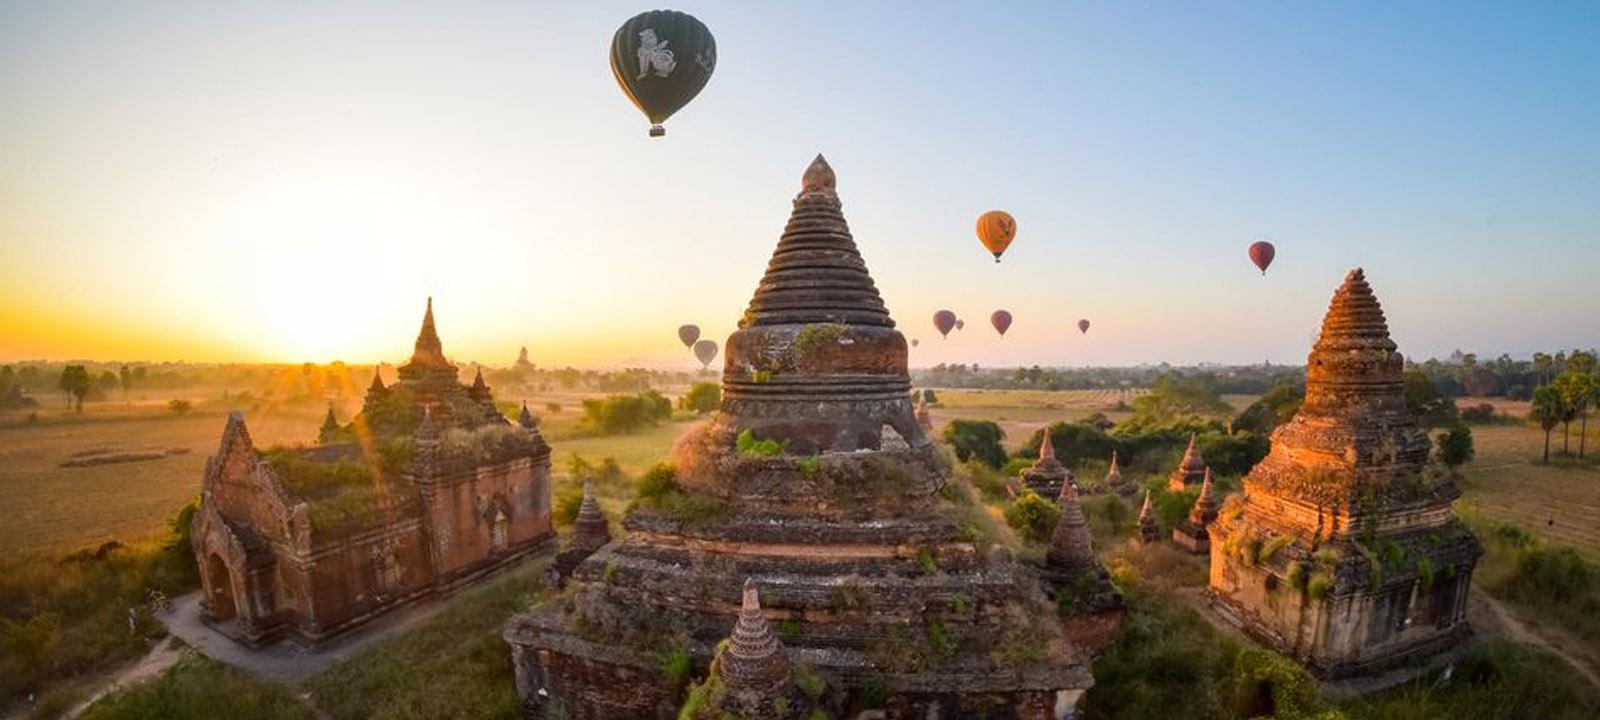 Bagan-Le guide de voyage